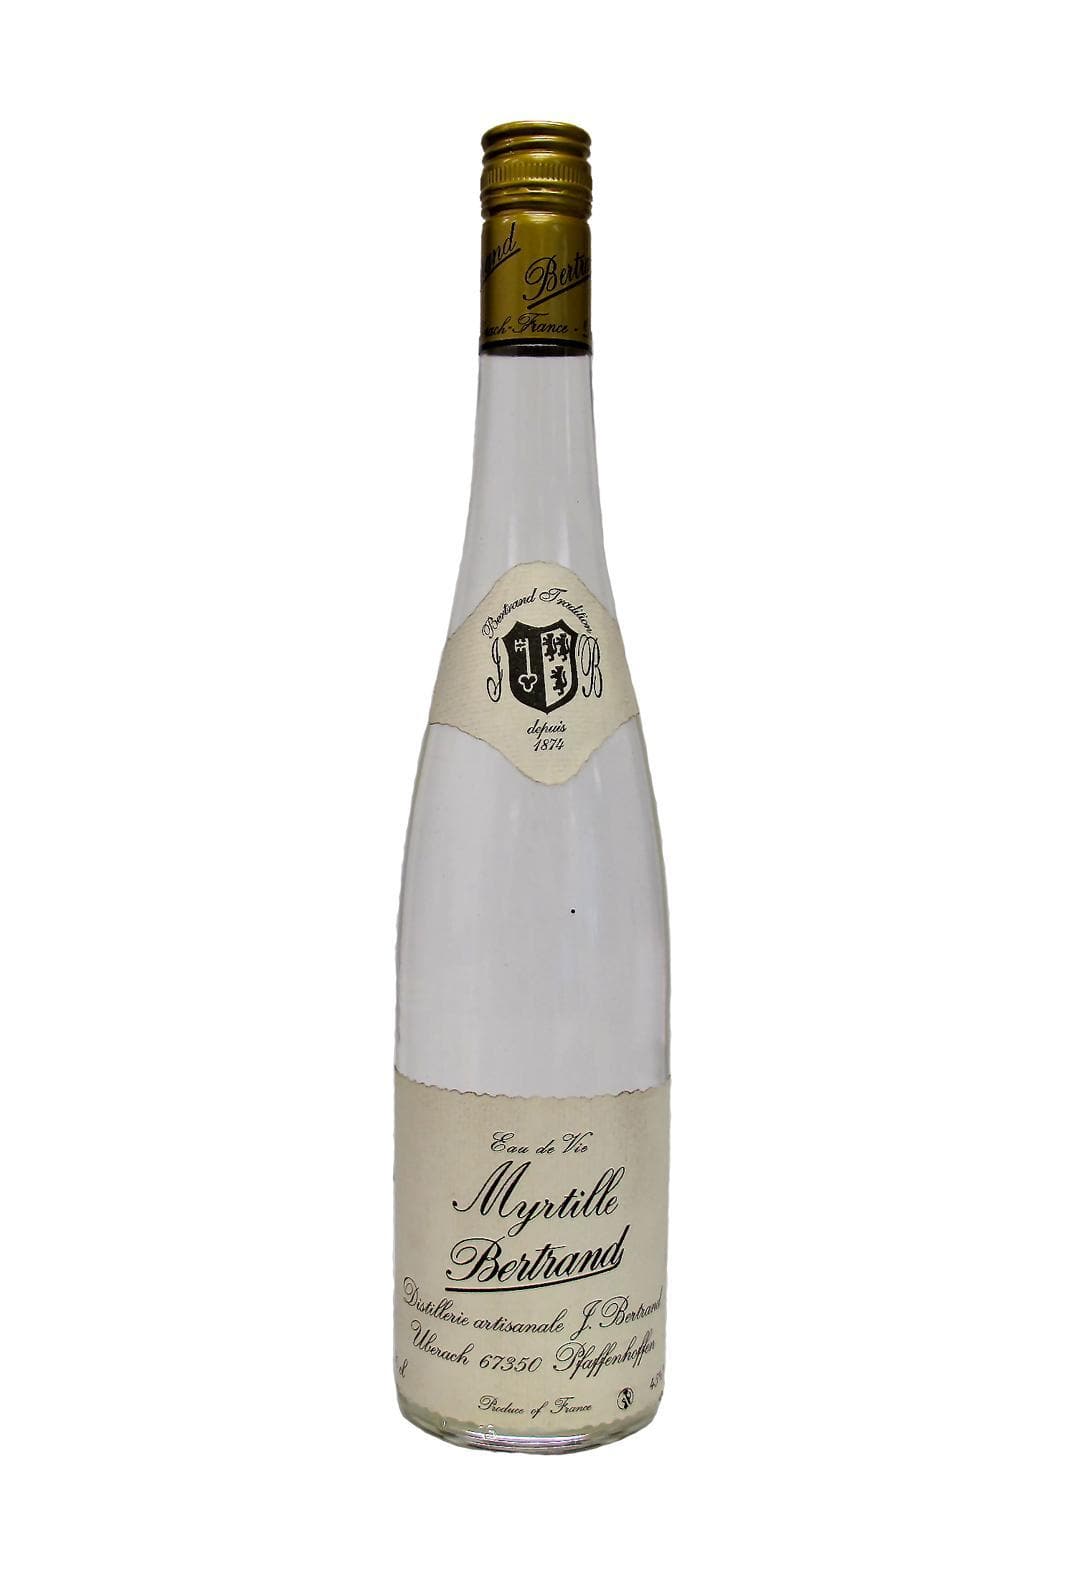 Bertrand Eau de Vie de Myrtille (Blueberry) 45% 700ml | Liqueurs | Shop online at Spirits of France